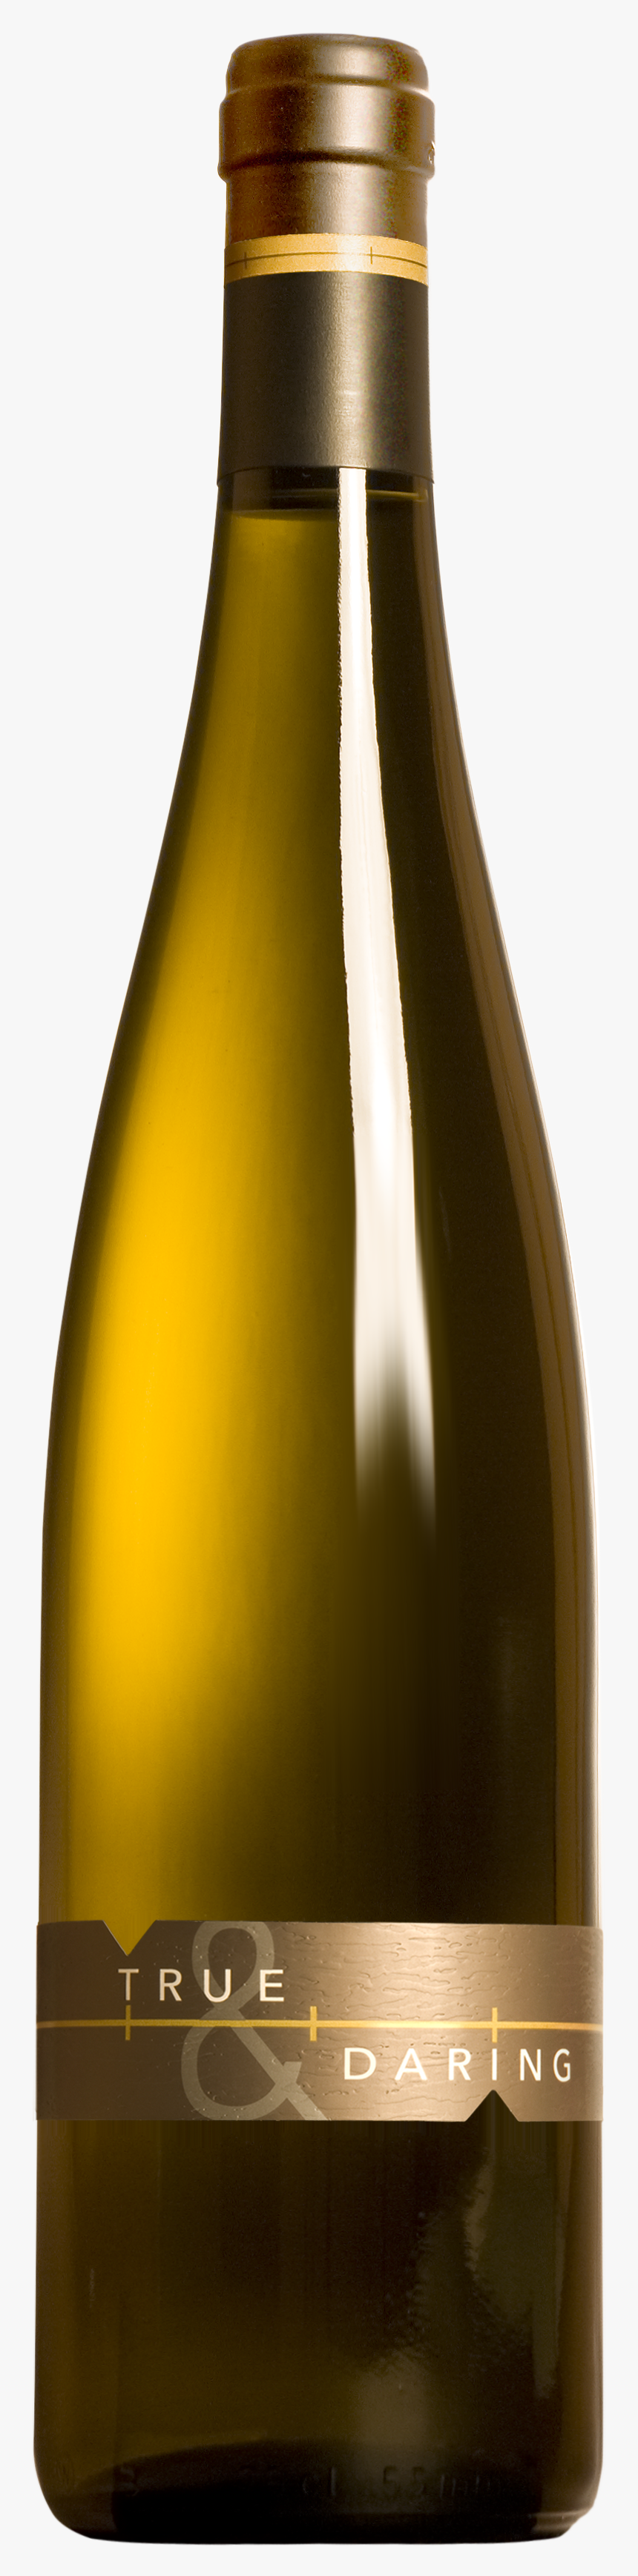 Wine Bottle Png Image - Wine Bottle Png, Transparent Png, Free Download